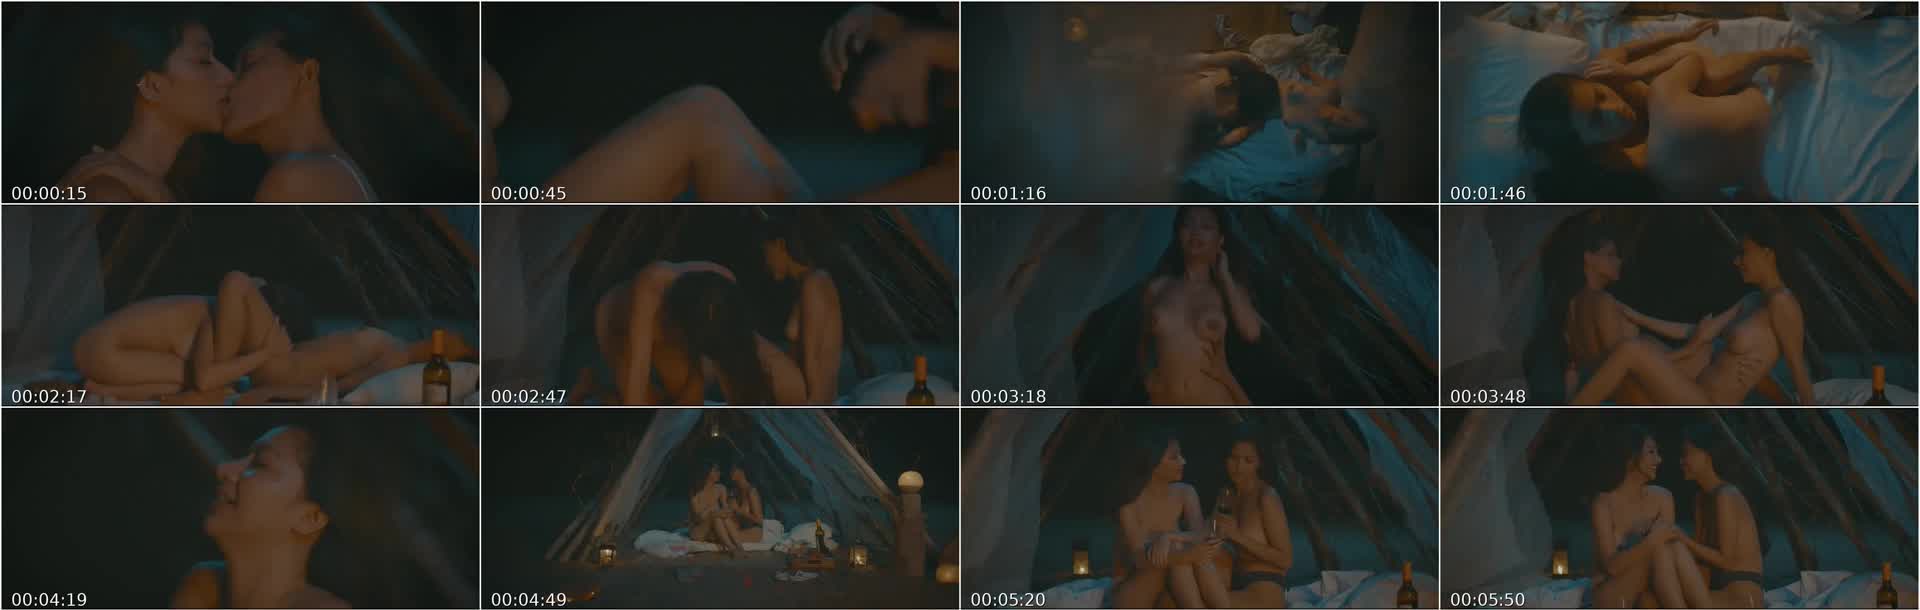 Lesbian Sex Scene in Adan 2019